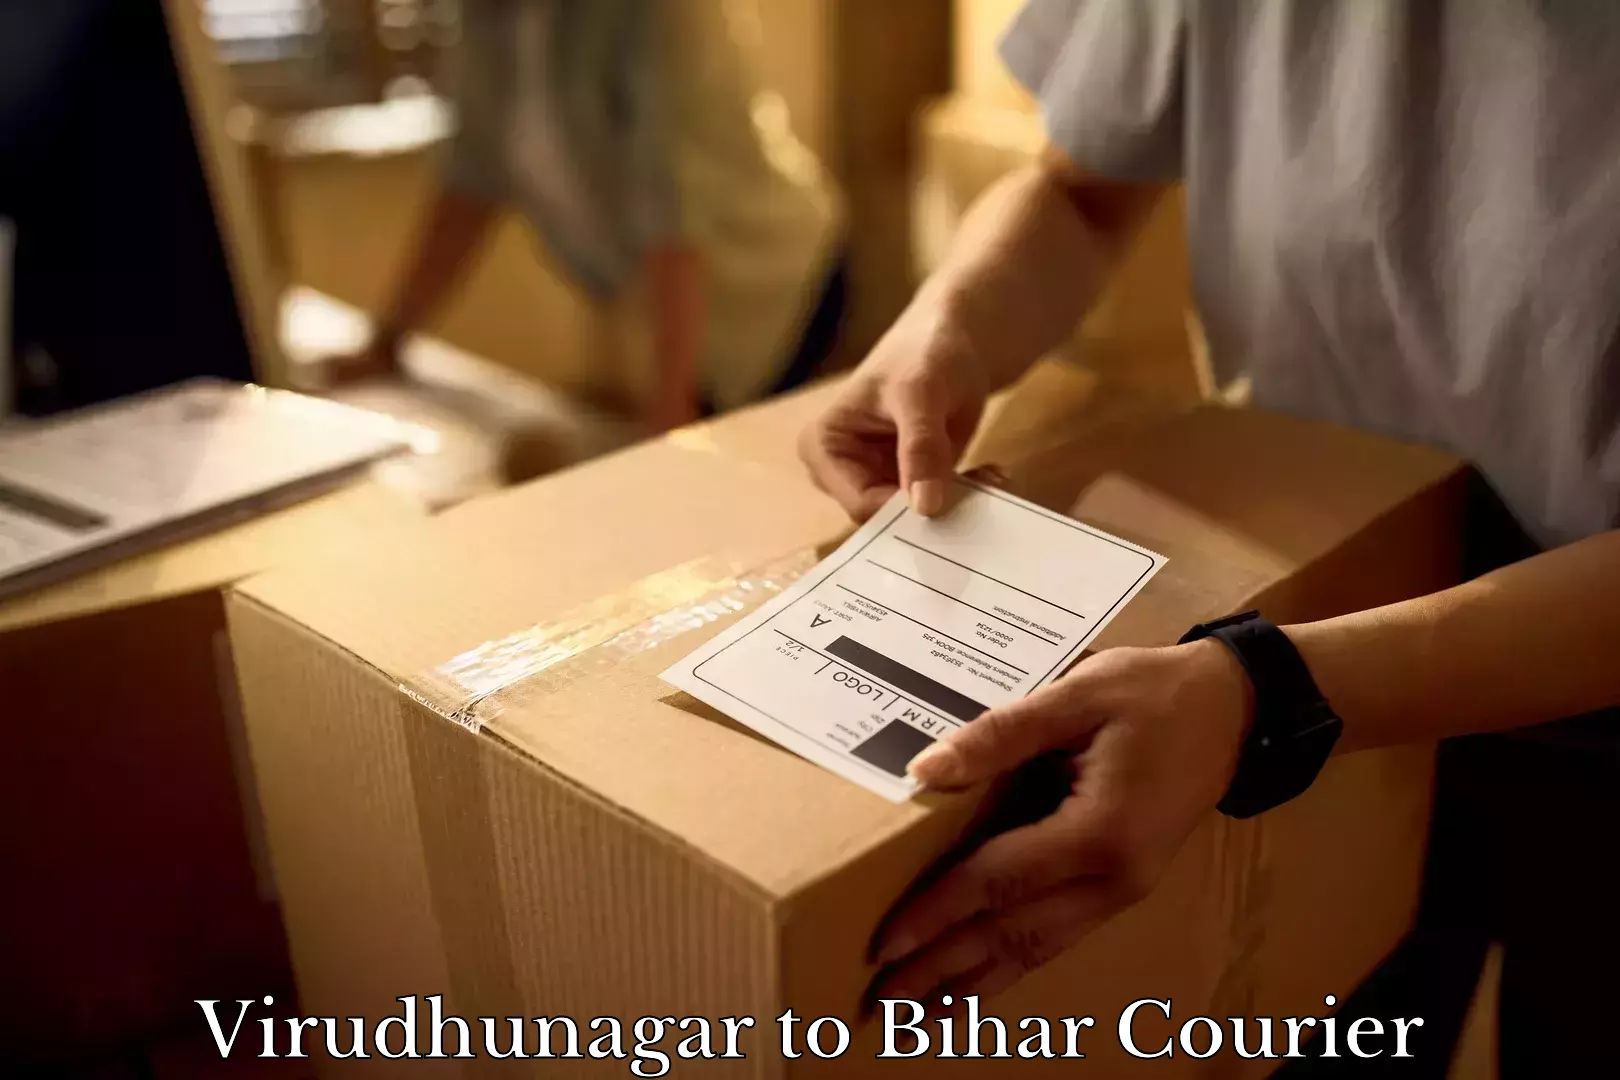 Furniture moving experts Virudhunagar to Bhorey